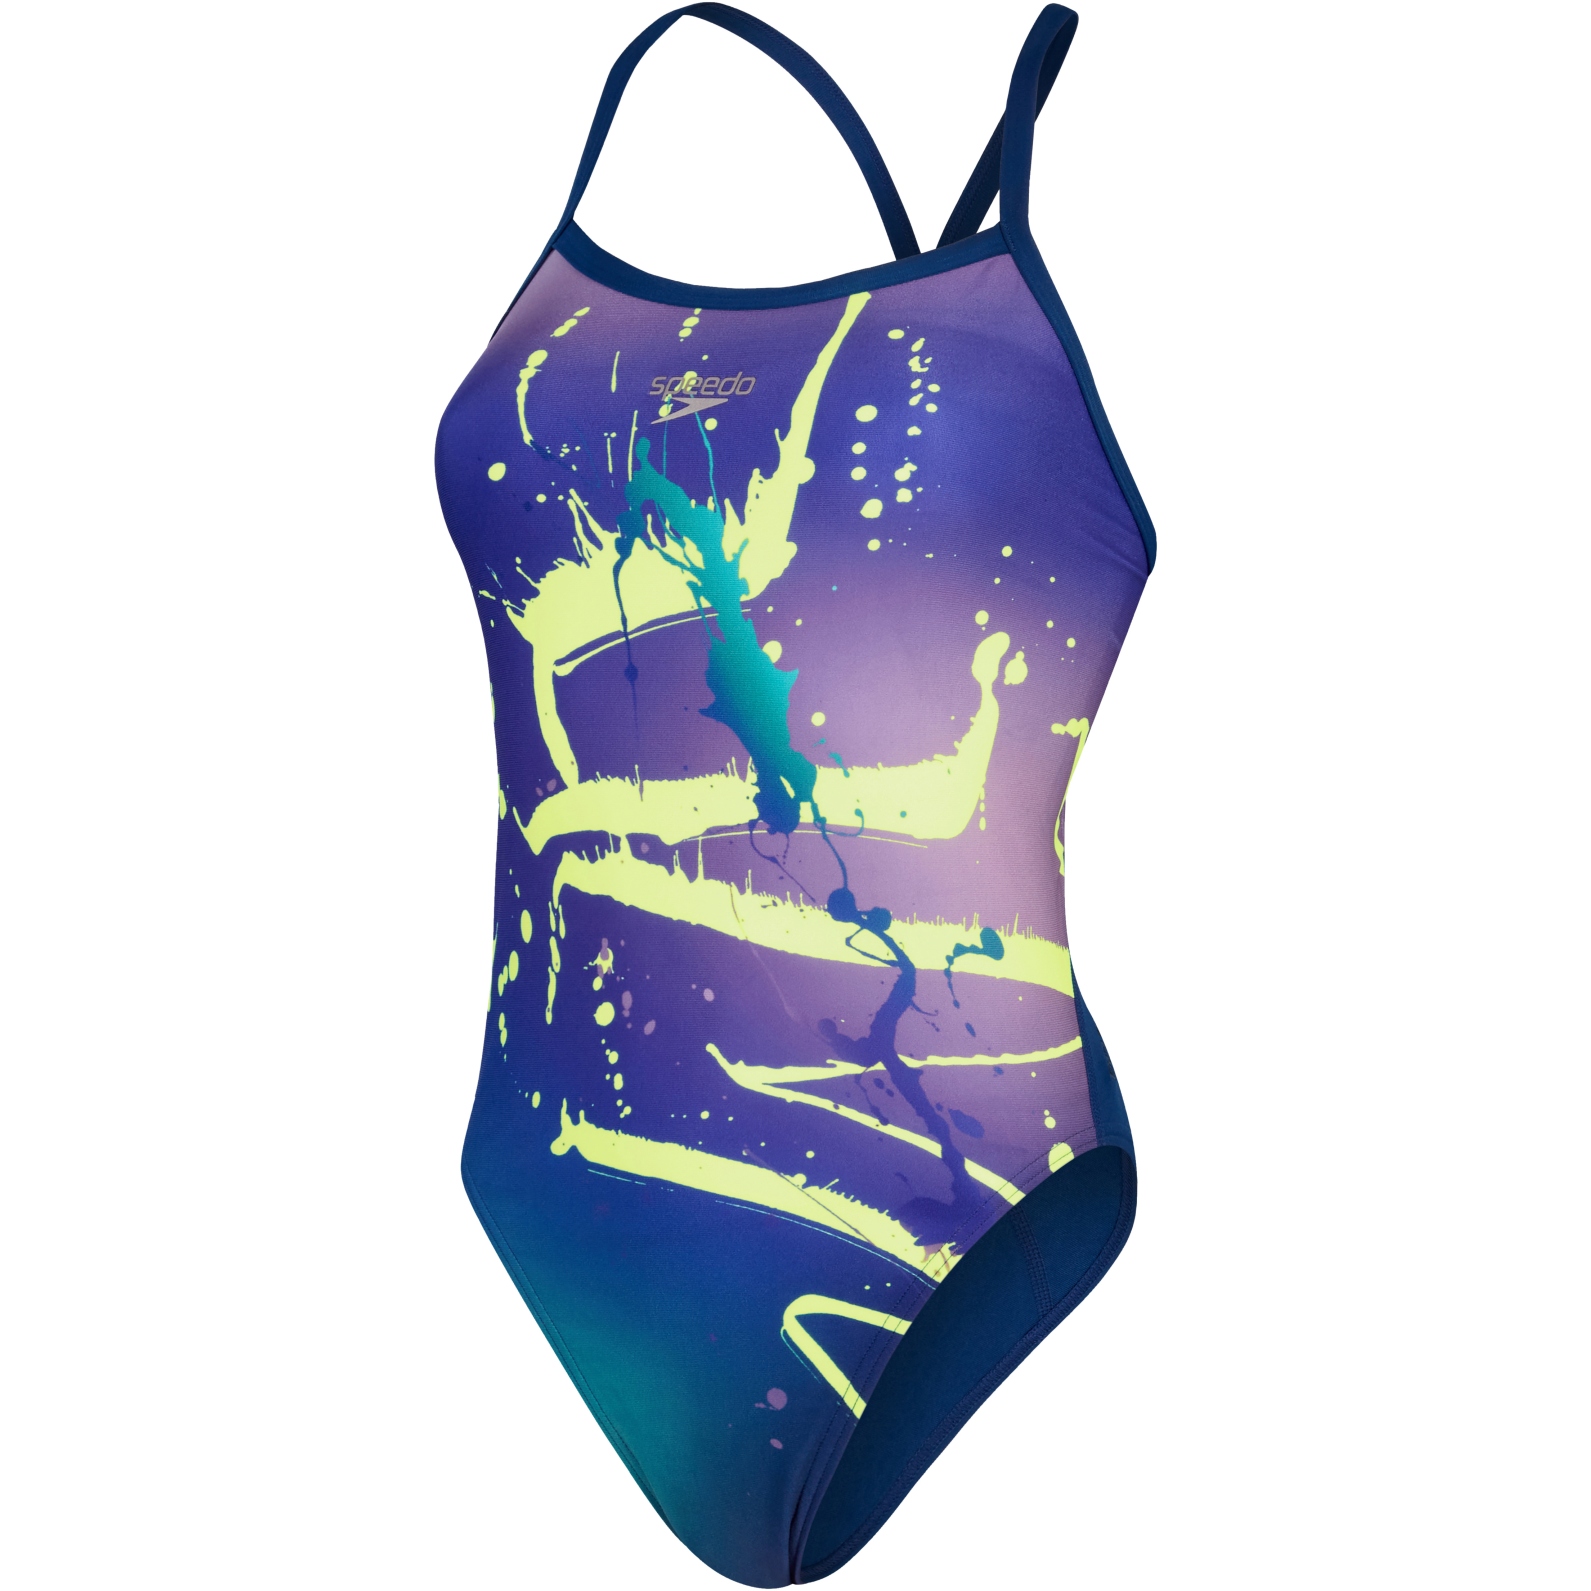 Produktbild von Speedo Placement Digital Turnback Badeanzug - ammonite/miami lilac/bright zest/aquarium